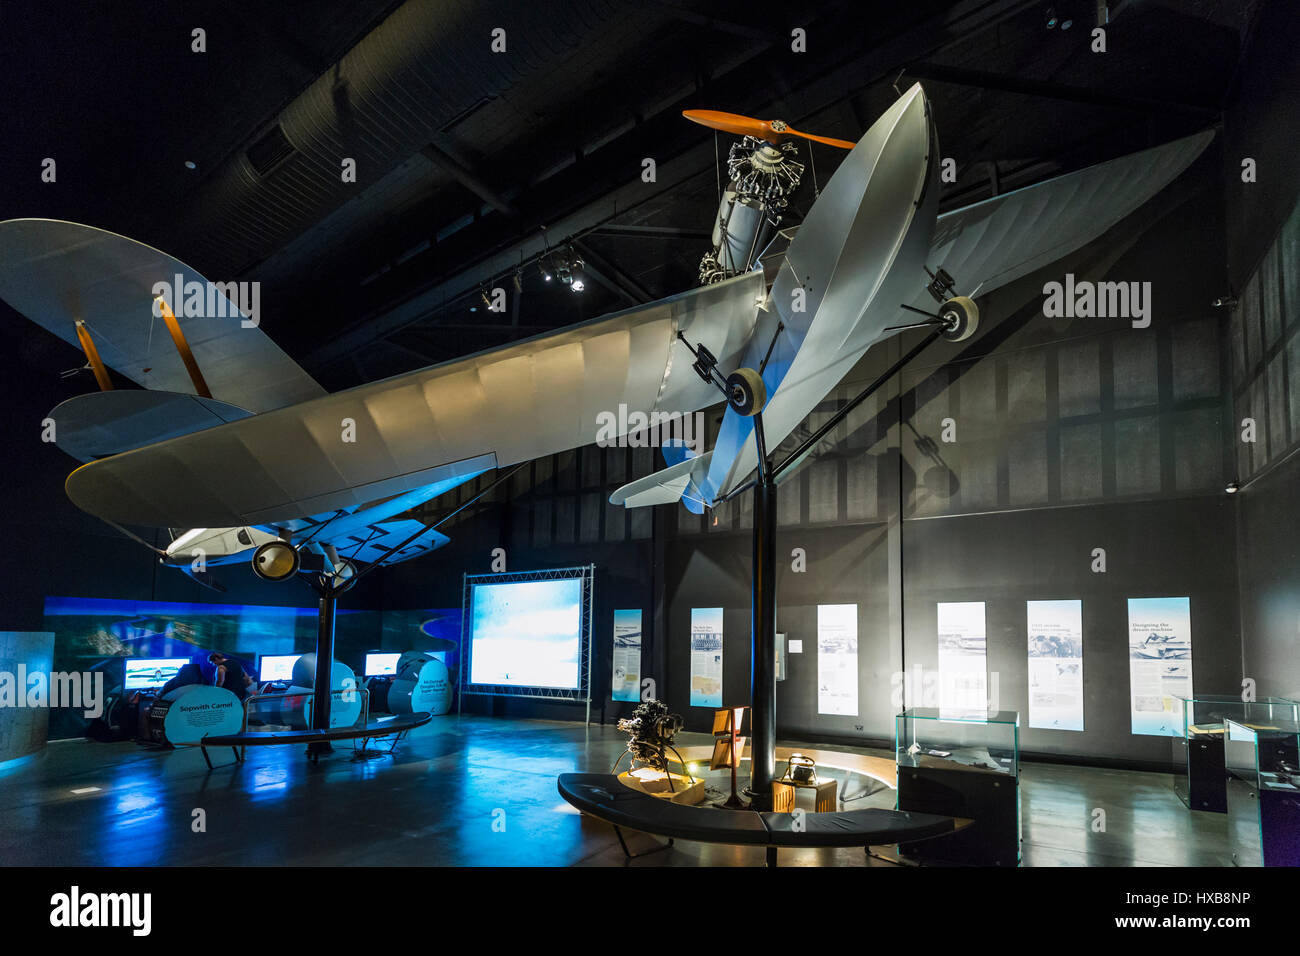 Réplicas de aviones, incluyendo el Ibis y Hinkler exposiciones interactivas dentro de la sala de aviación. Bundaberg, Queensland, Australia Foto de stock